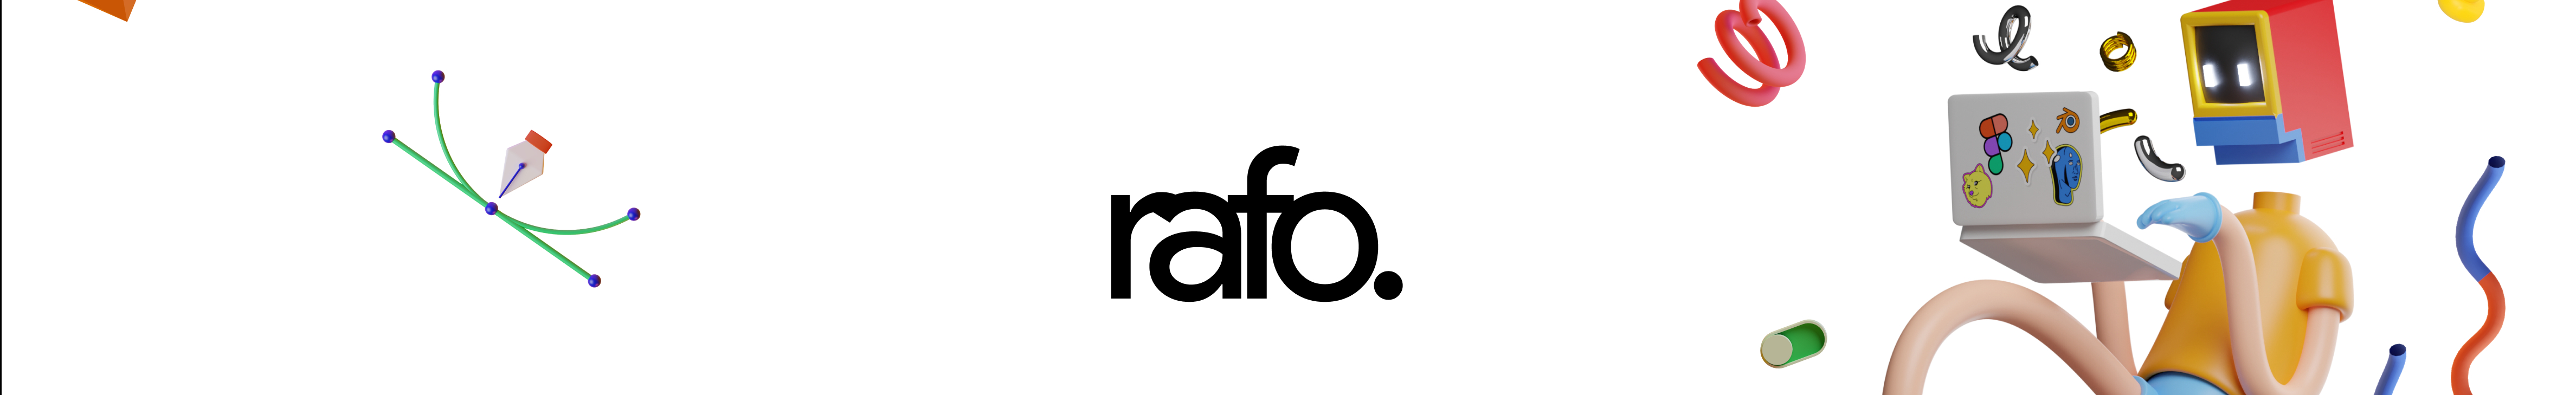 Rafo. ‎'s profile banner